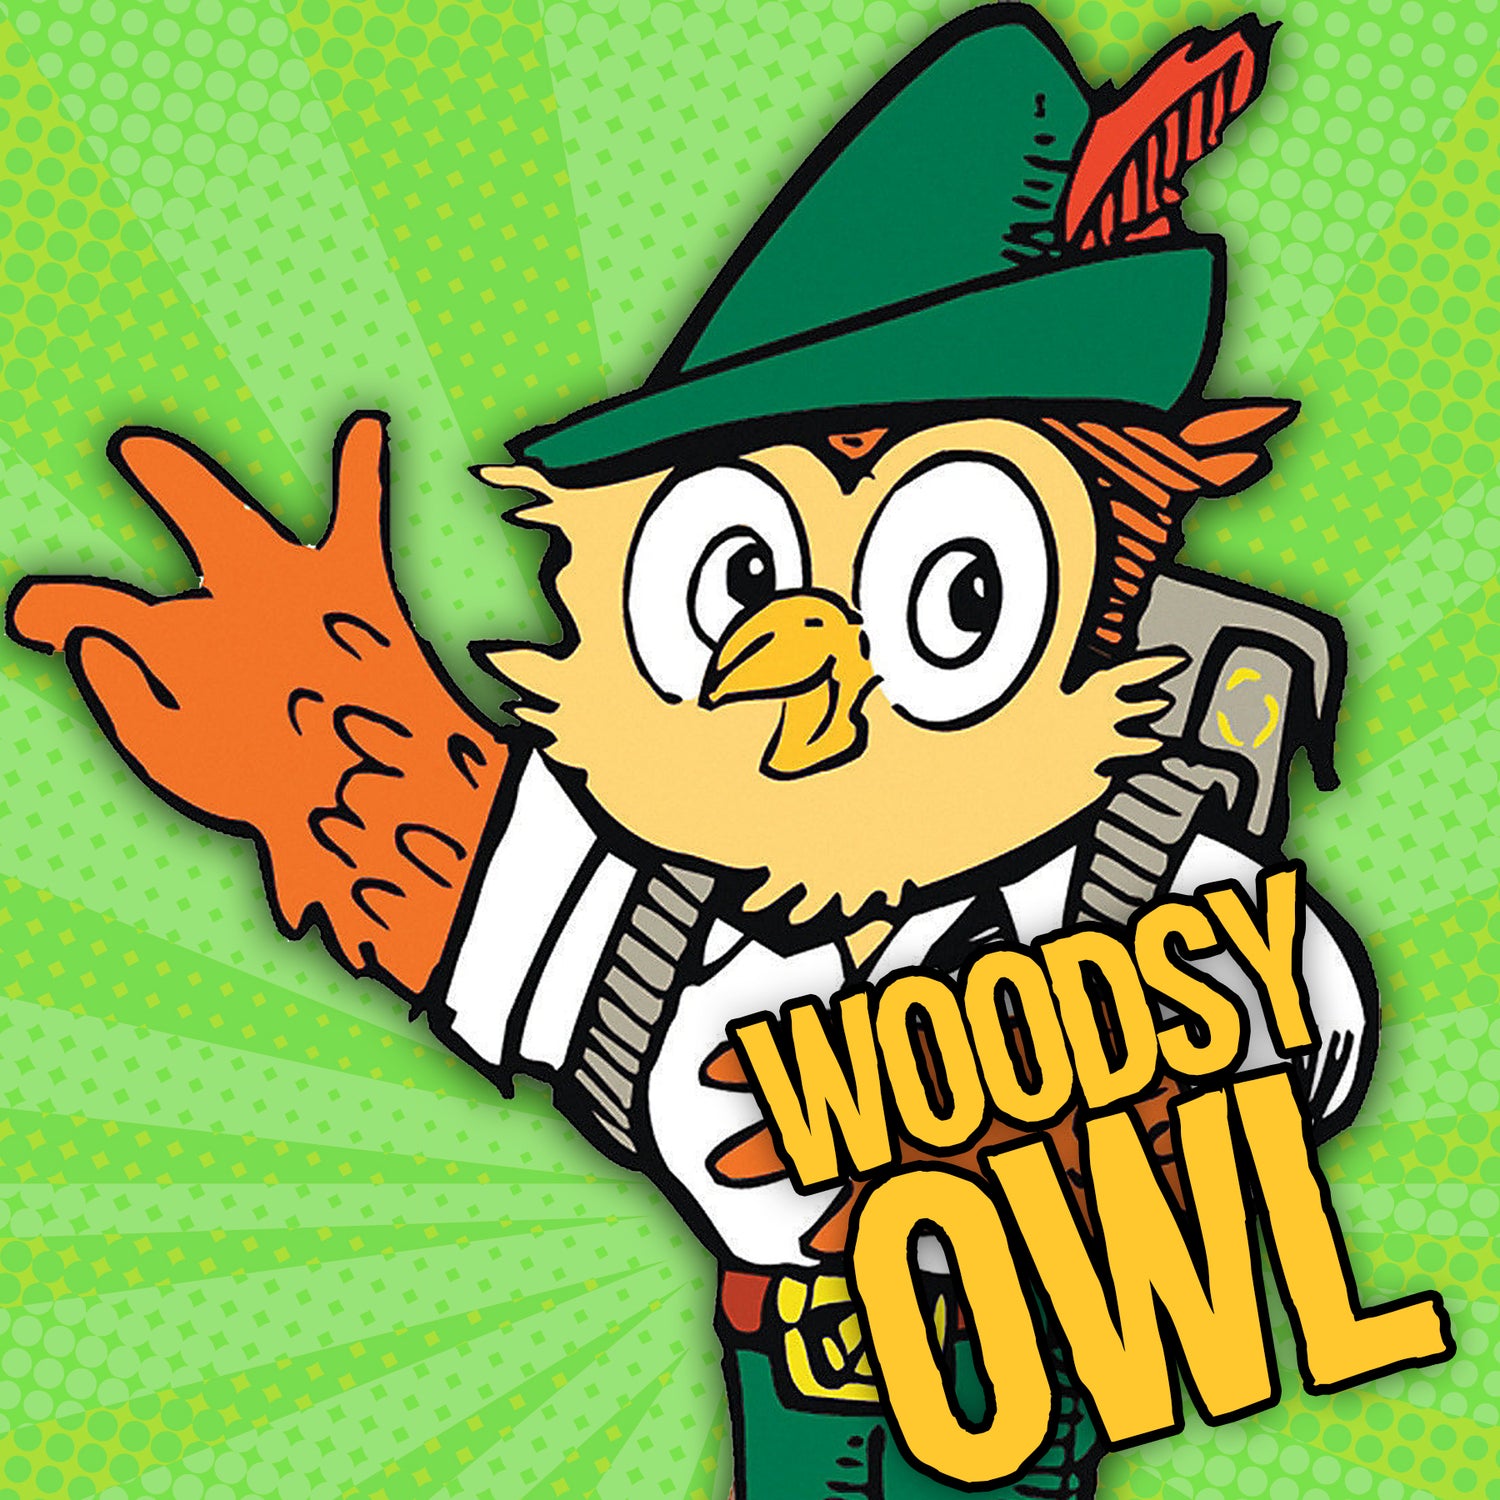 Woodsy Owl